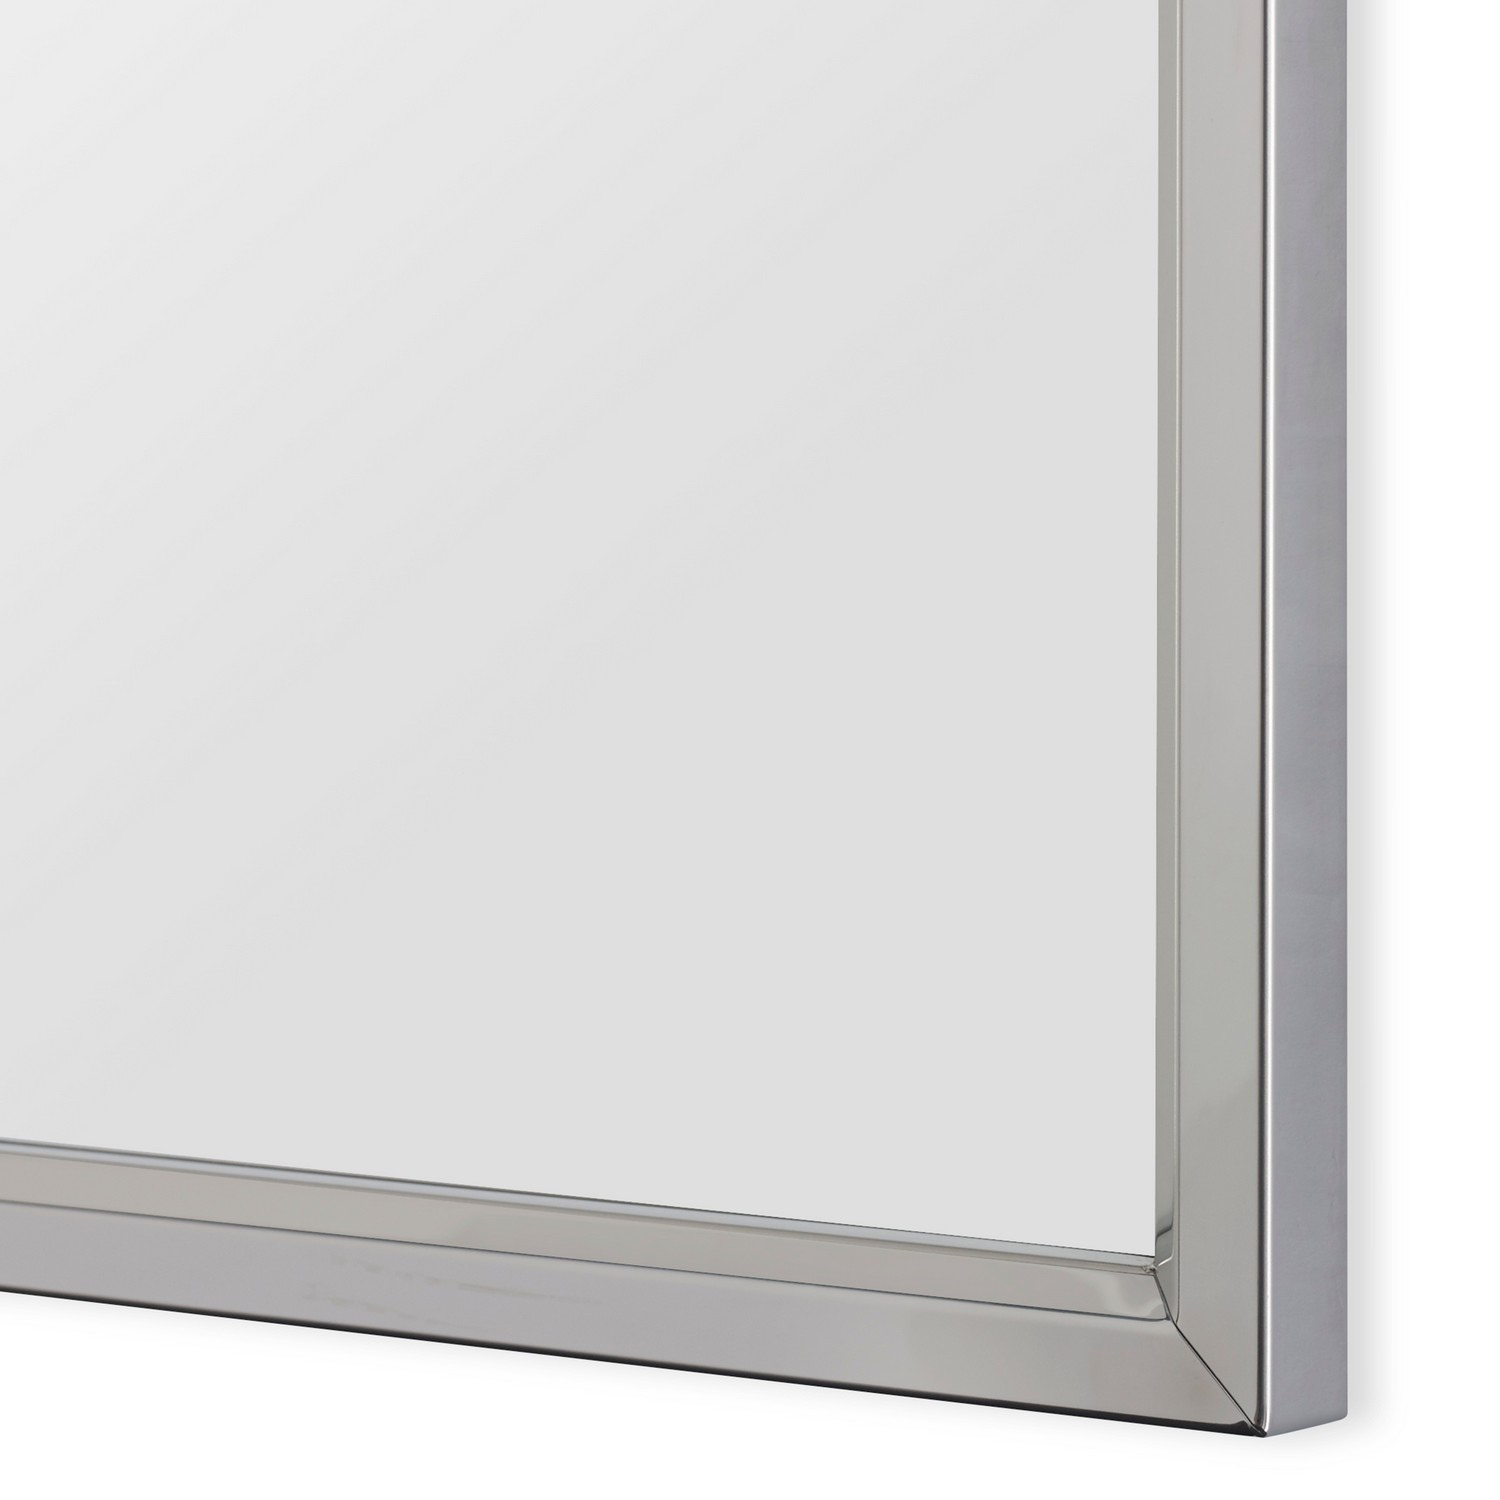 Uttermost W00493 Mirror - Stainless Steel